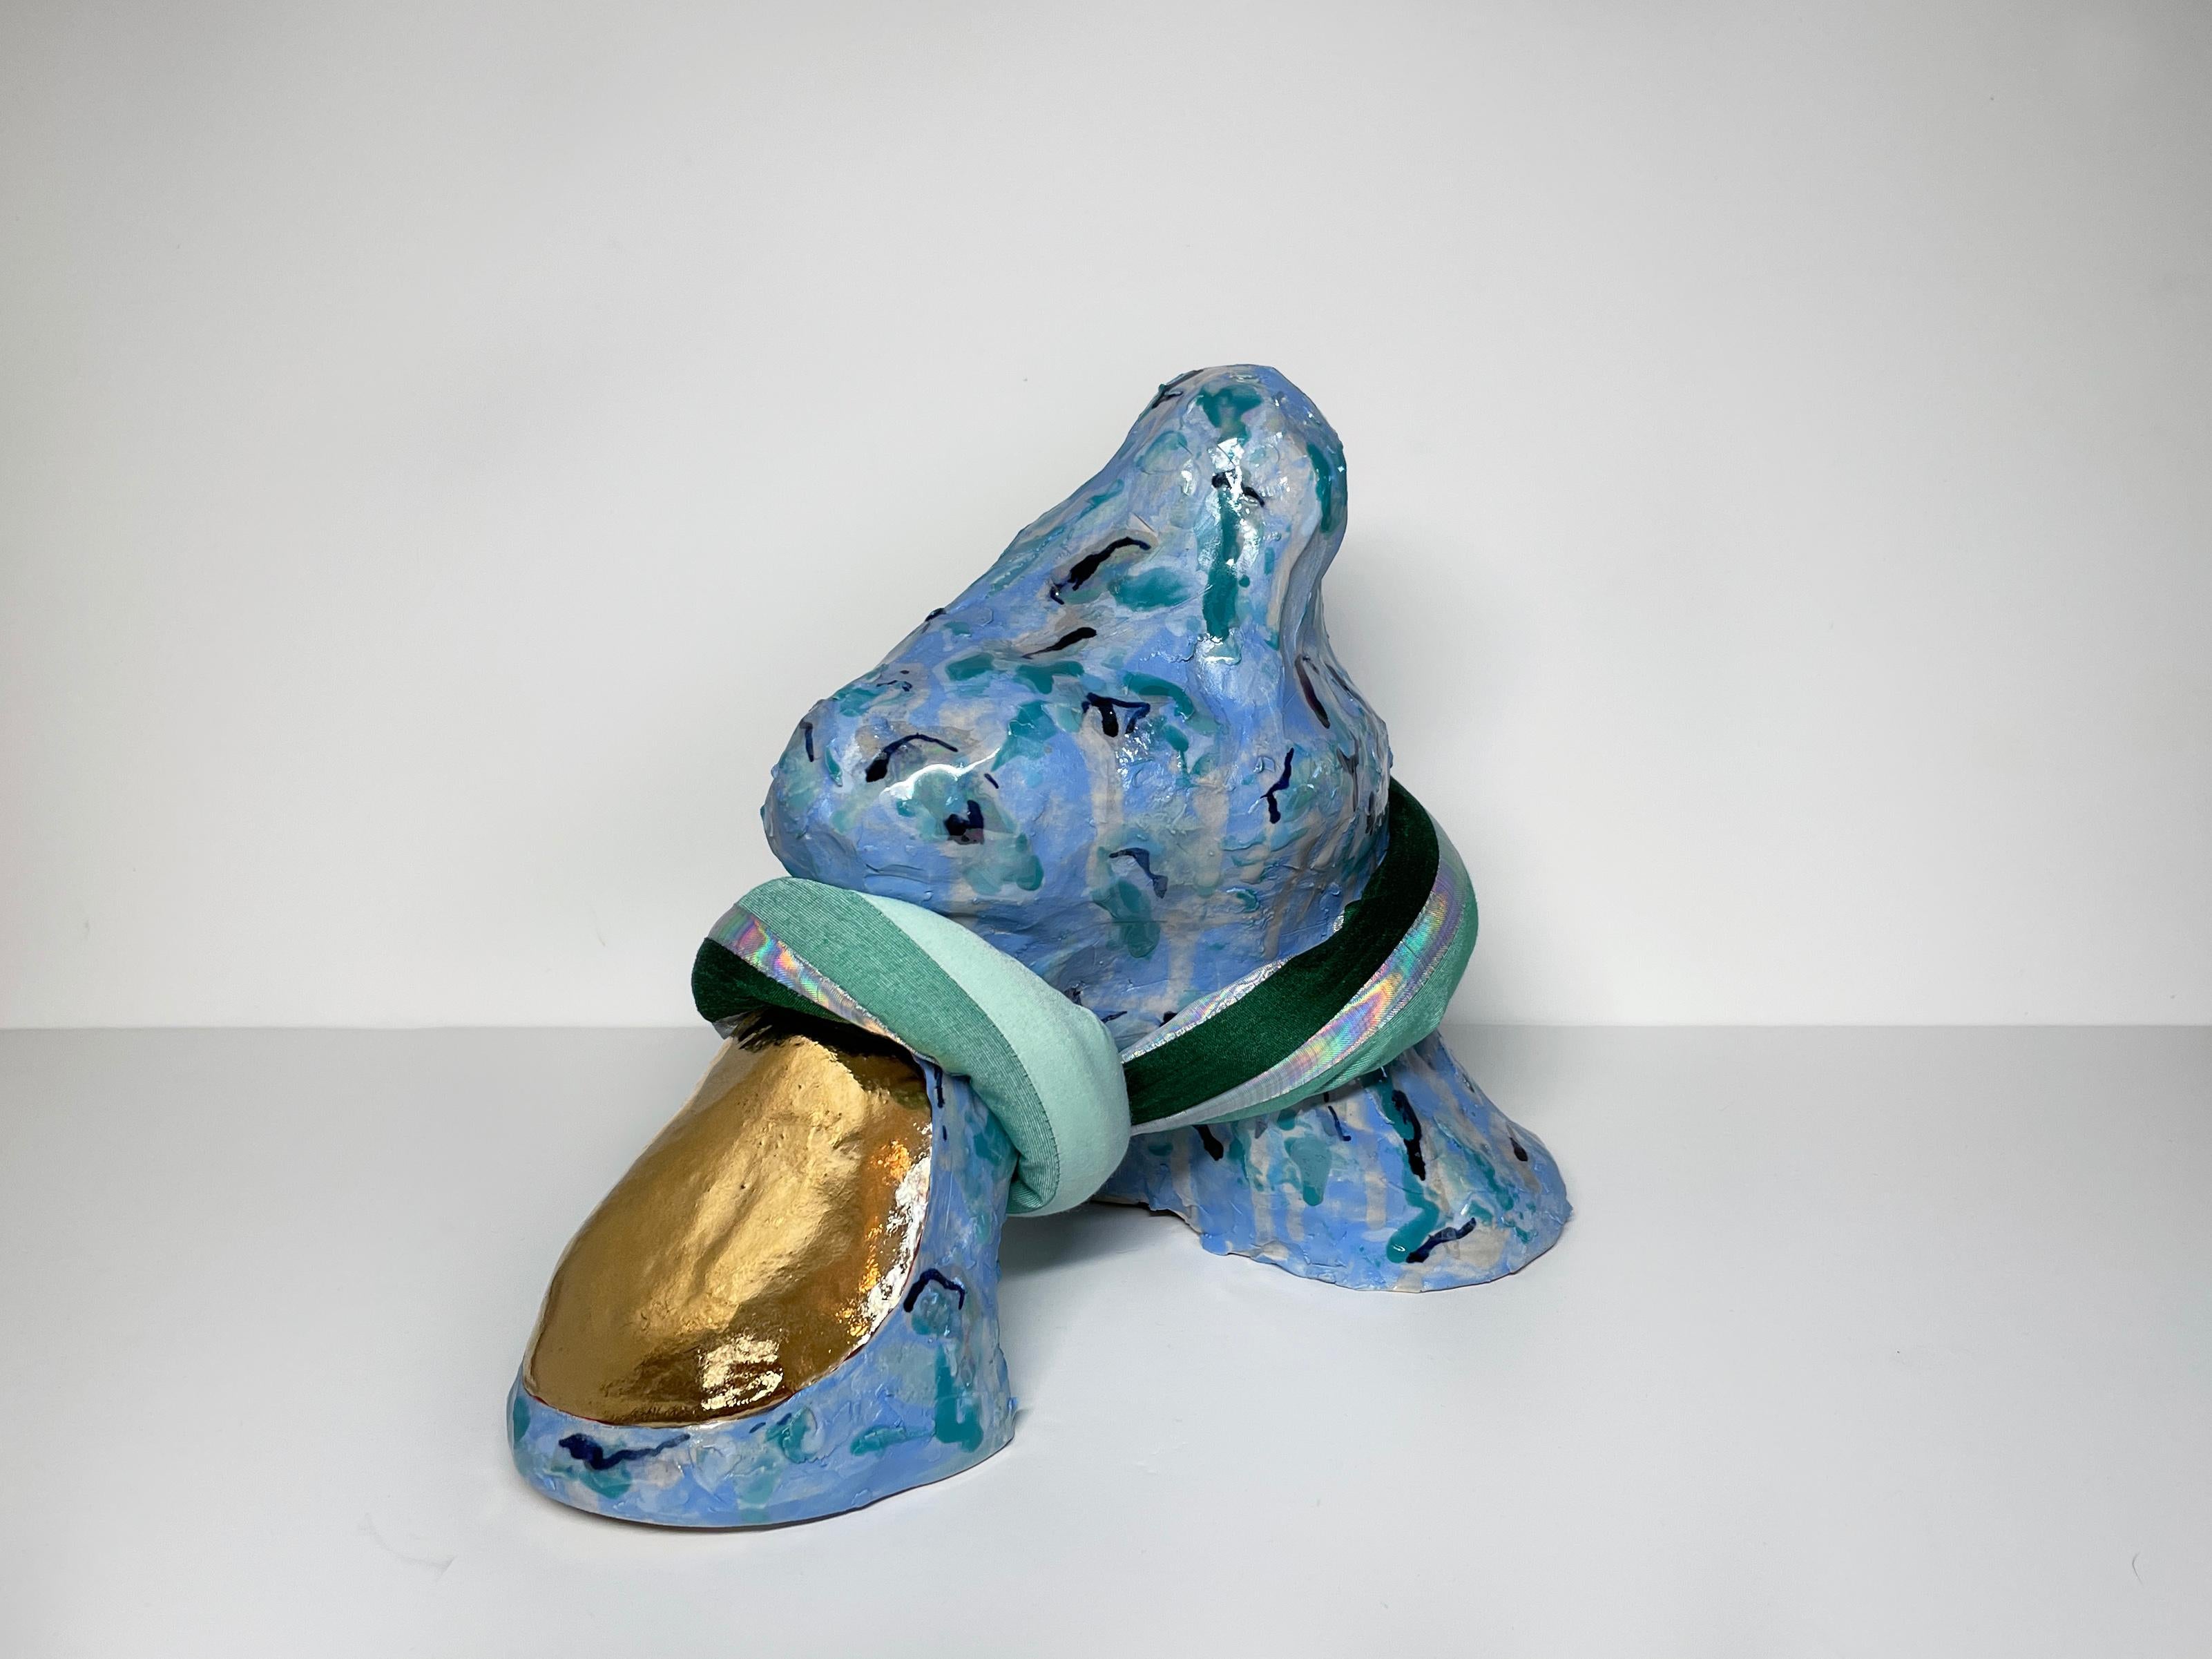 Medium Abstract Ceramic Sculpture with Textile: 'Tijme'